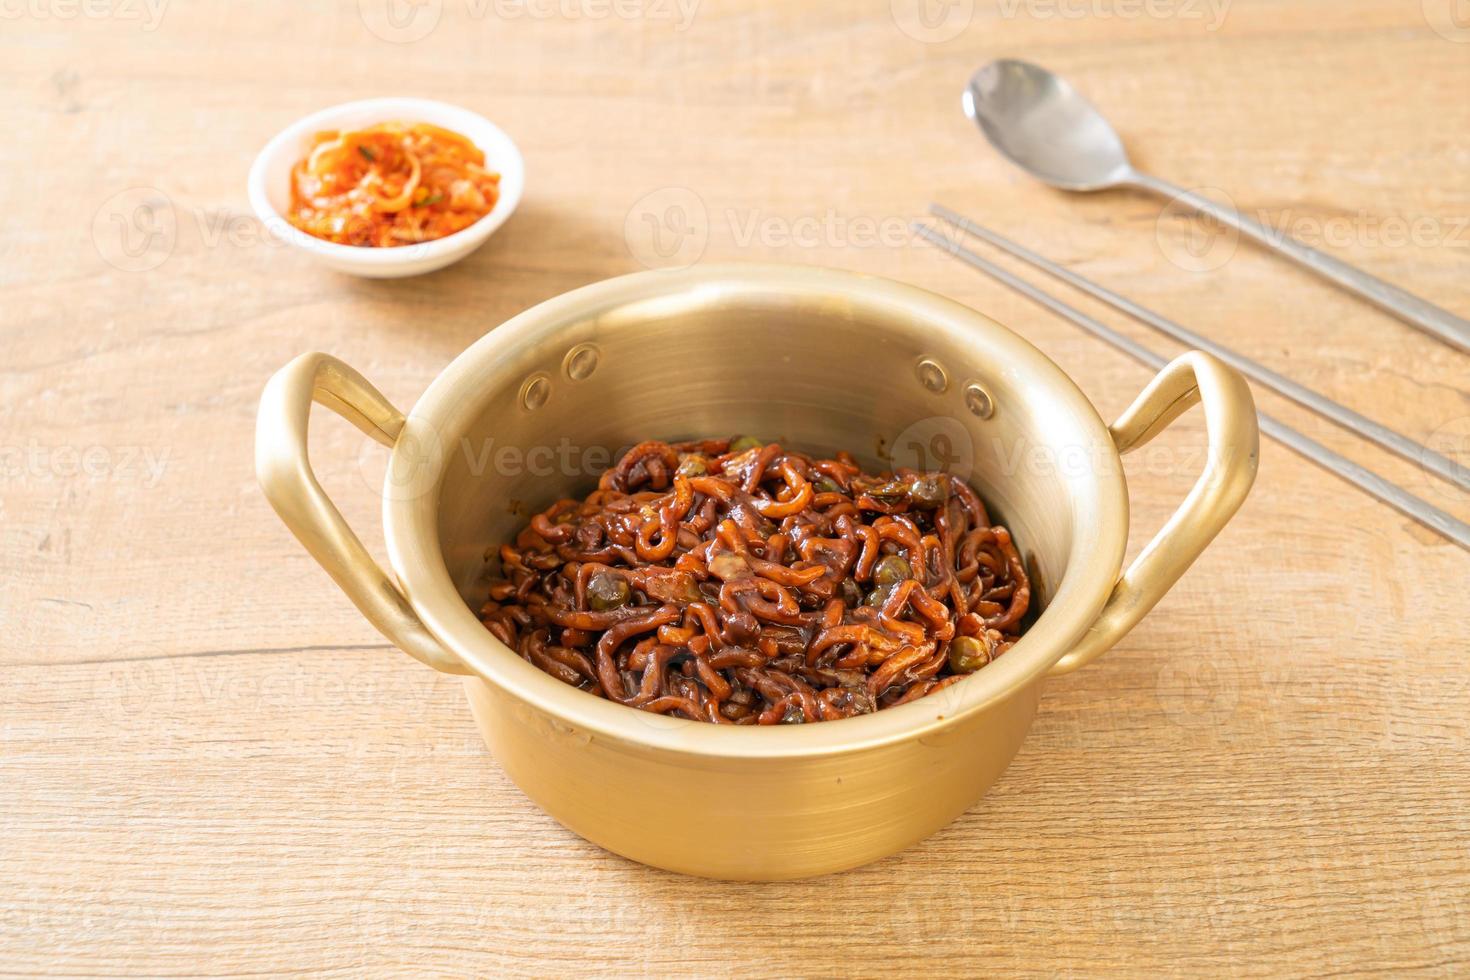 koreanische schwarze Spaghetti oder Instantnudeln mit gerösteter Chajung-Sauce foto